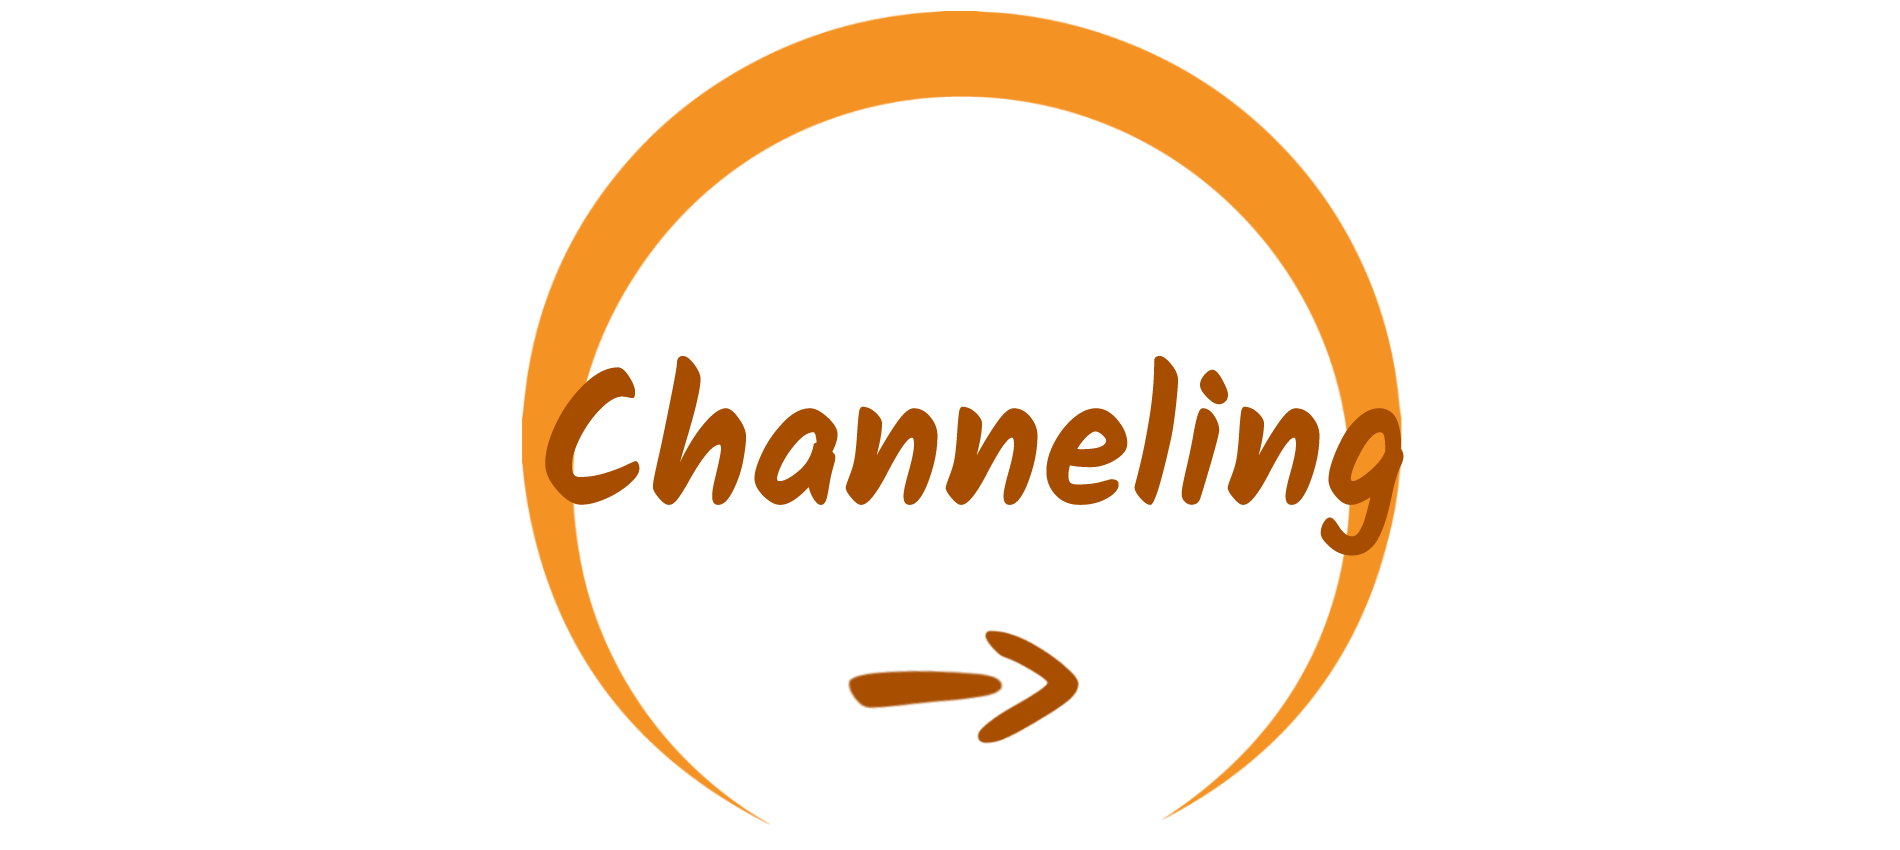 Channeling - Angebot von Körpermassagen für die Ortschaften Aarau, Kölliken, Zofingen und Schönenwerd, Kanton Aargau